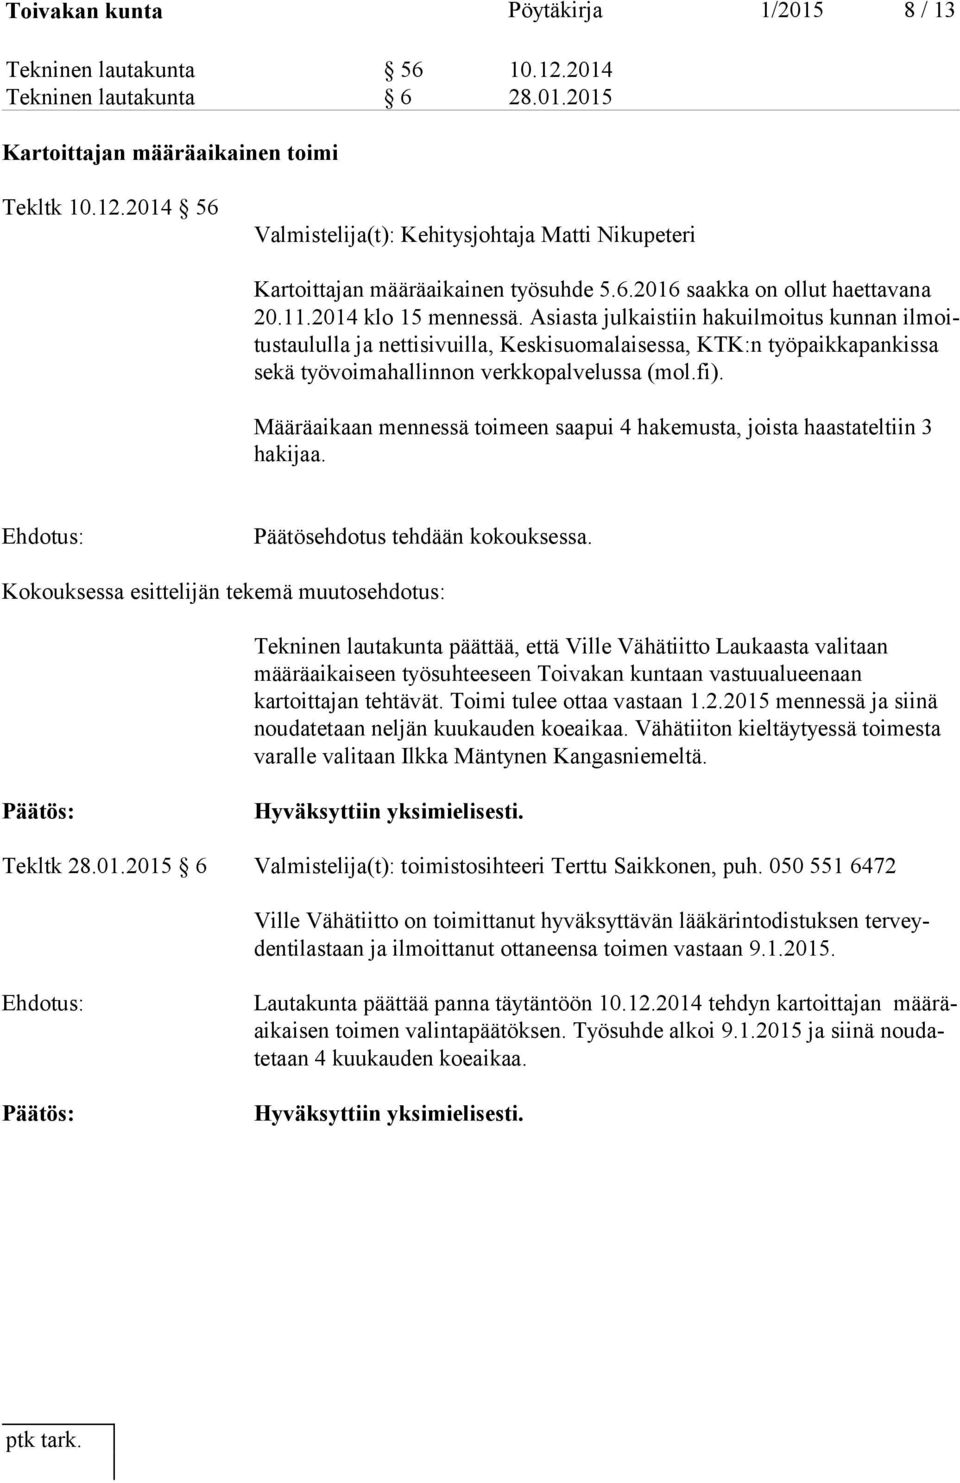 Asiasta julkaistiin hakuilmoitus kunnan il moitus tau lul la ja nettisivuilla, Keskisuomalaisessa, KTK:n työpaikkapankissa se kä työvoimahallinnon verkkopalvelussa (mol.fi).